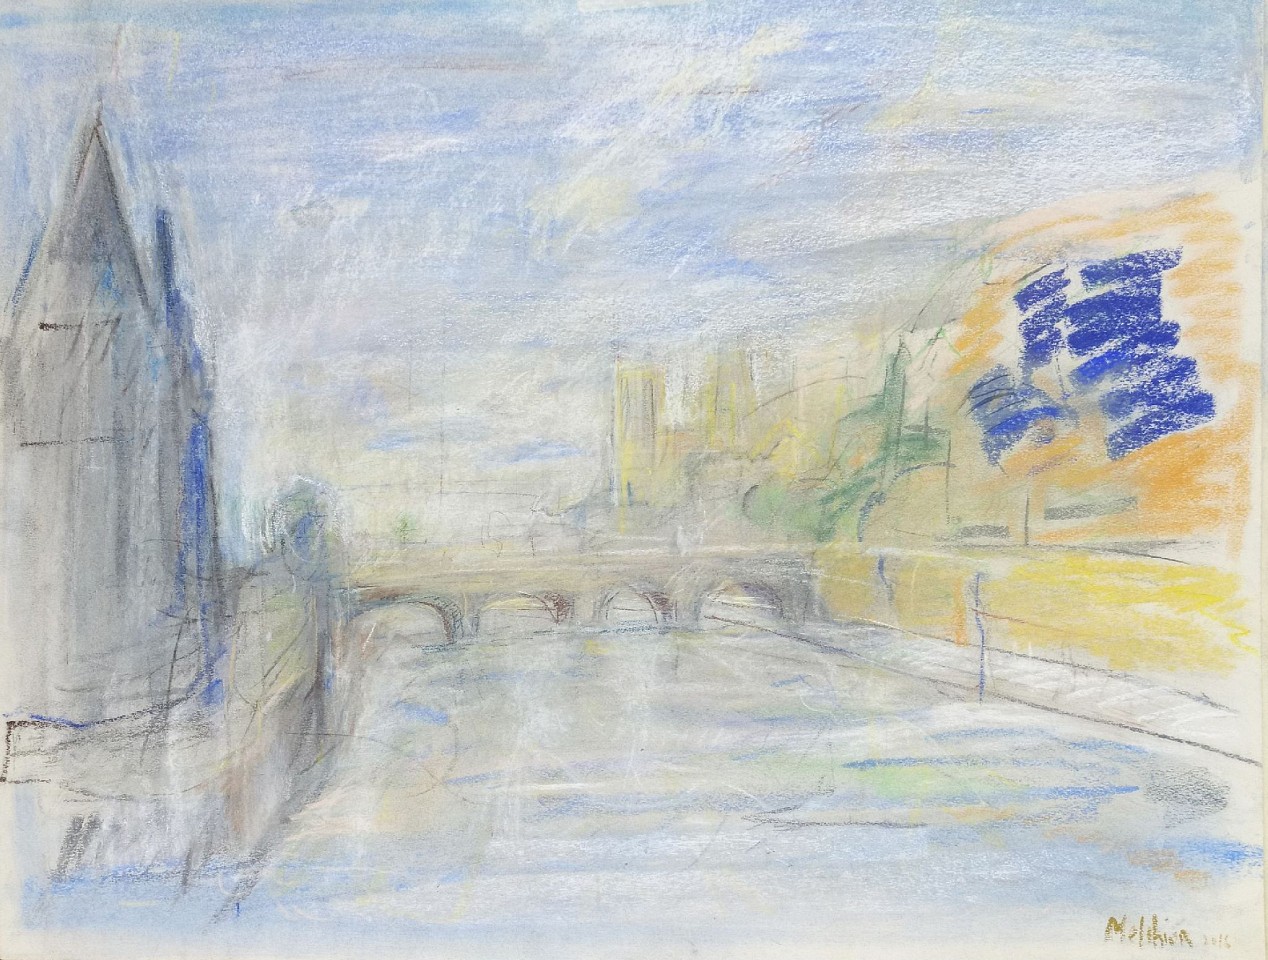 Isabelle Melchior, Paris La Tour de l'horloge et le Pont au change, 2020
pastel on paper, 25" x 19 2/3", 30.5"x 36" framed
IM 1310
Price Upon Request